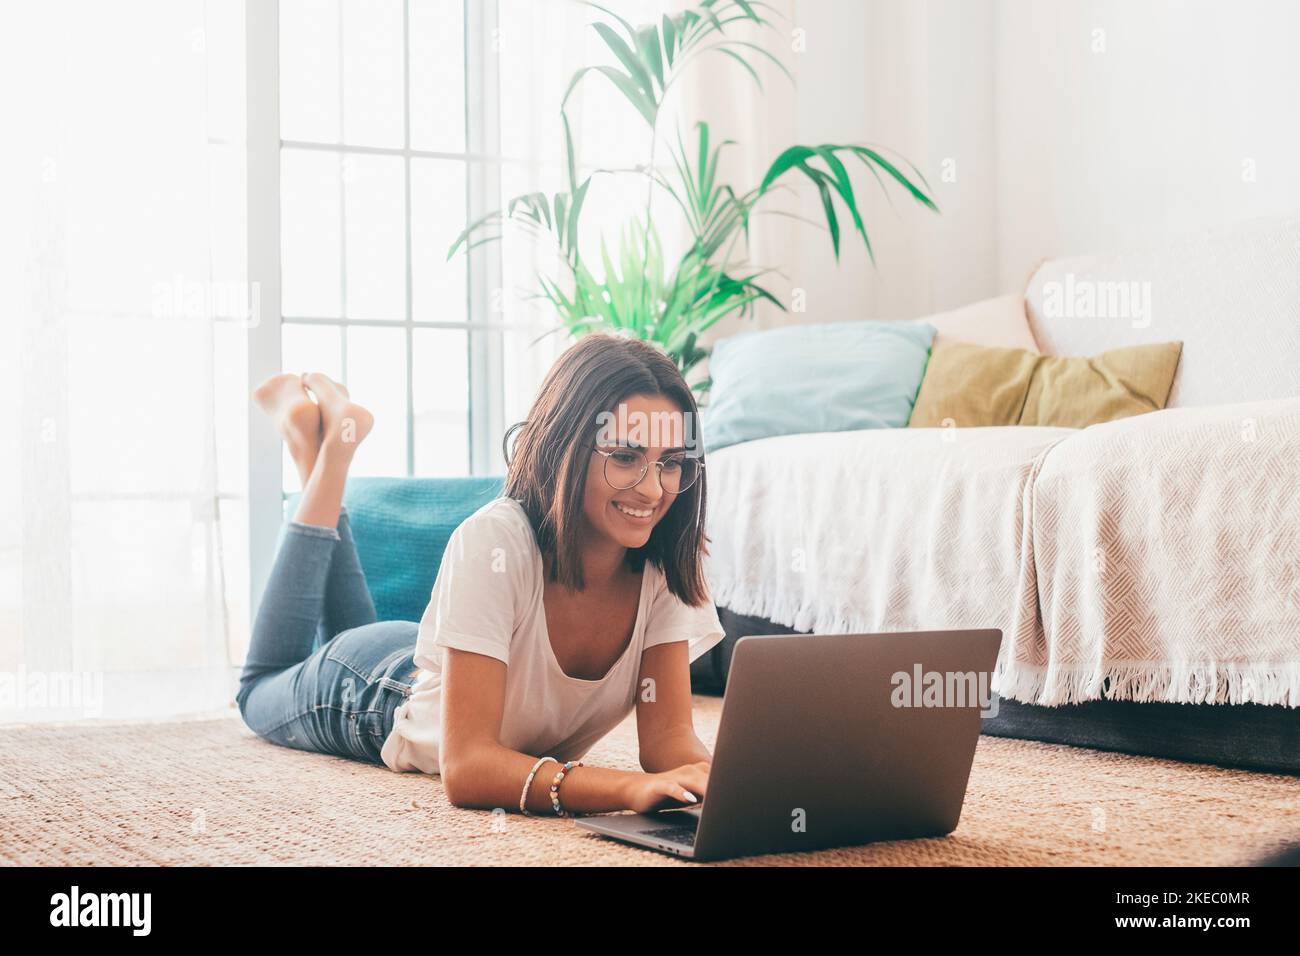 Giovane donna felice negli occhiali che scrivono usando il laptop mentre sdraiata sul tappeto nel soggiorno della sua casa. Bella donna che trascorre il tempo libero utilizzando il computer portatile. Freelance che lavora da casa Foto Stock